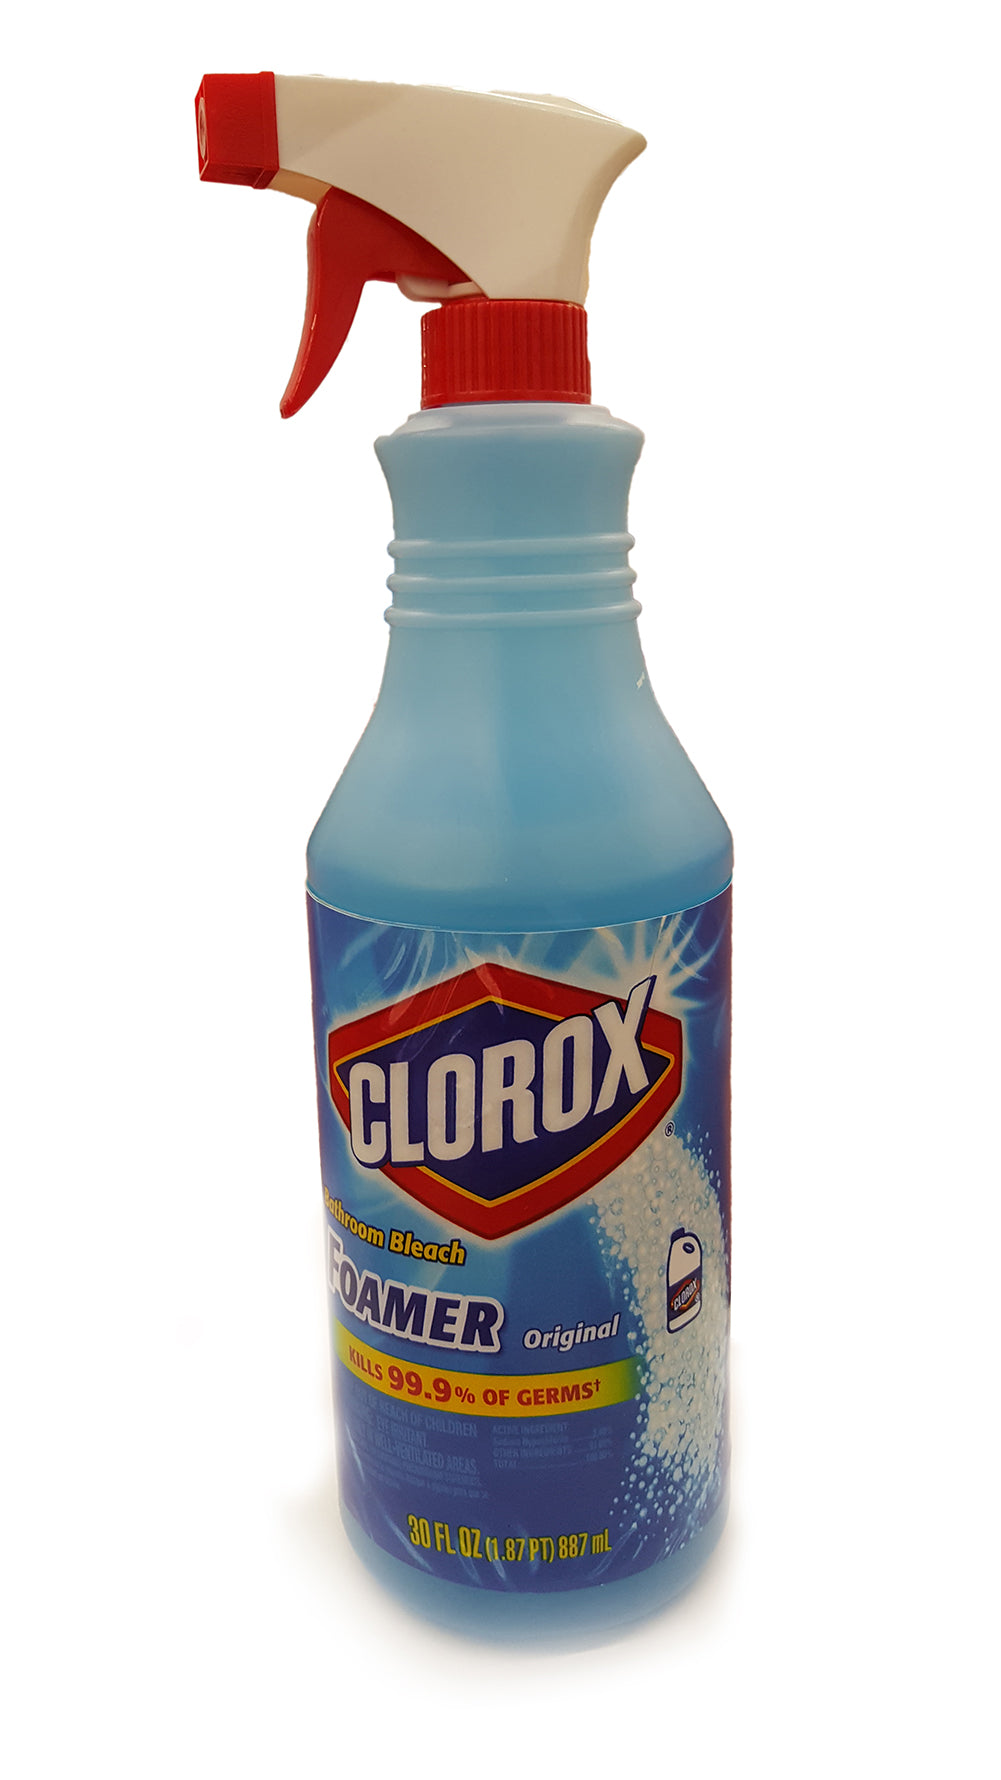 Clorox Bathroom Bleach Foamer Spray Diversion Safe (Working Spray Bottle)